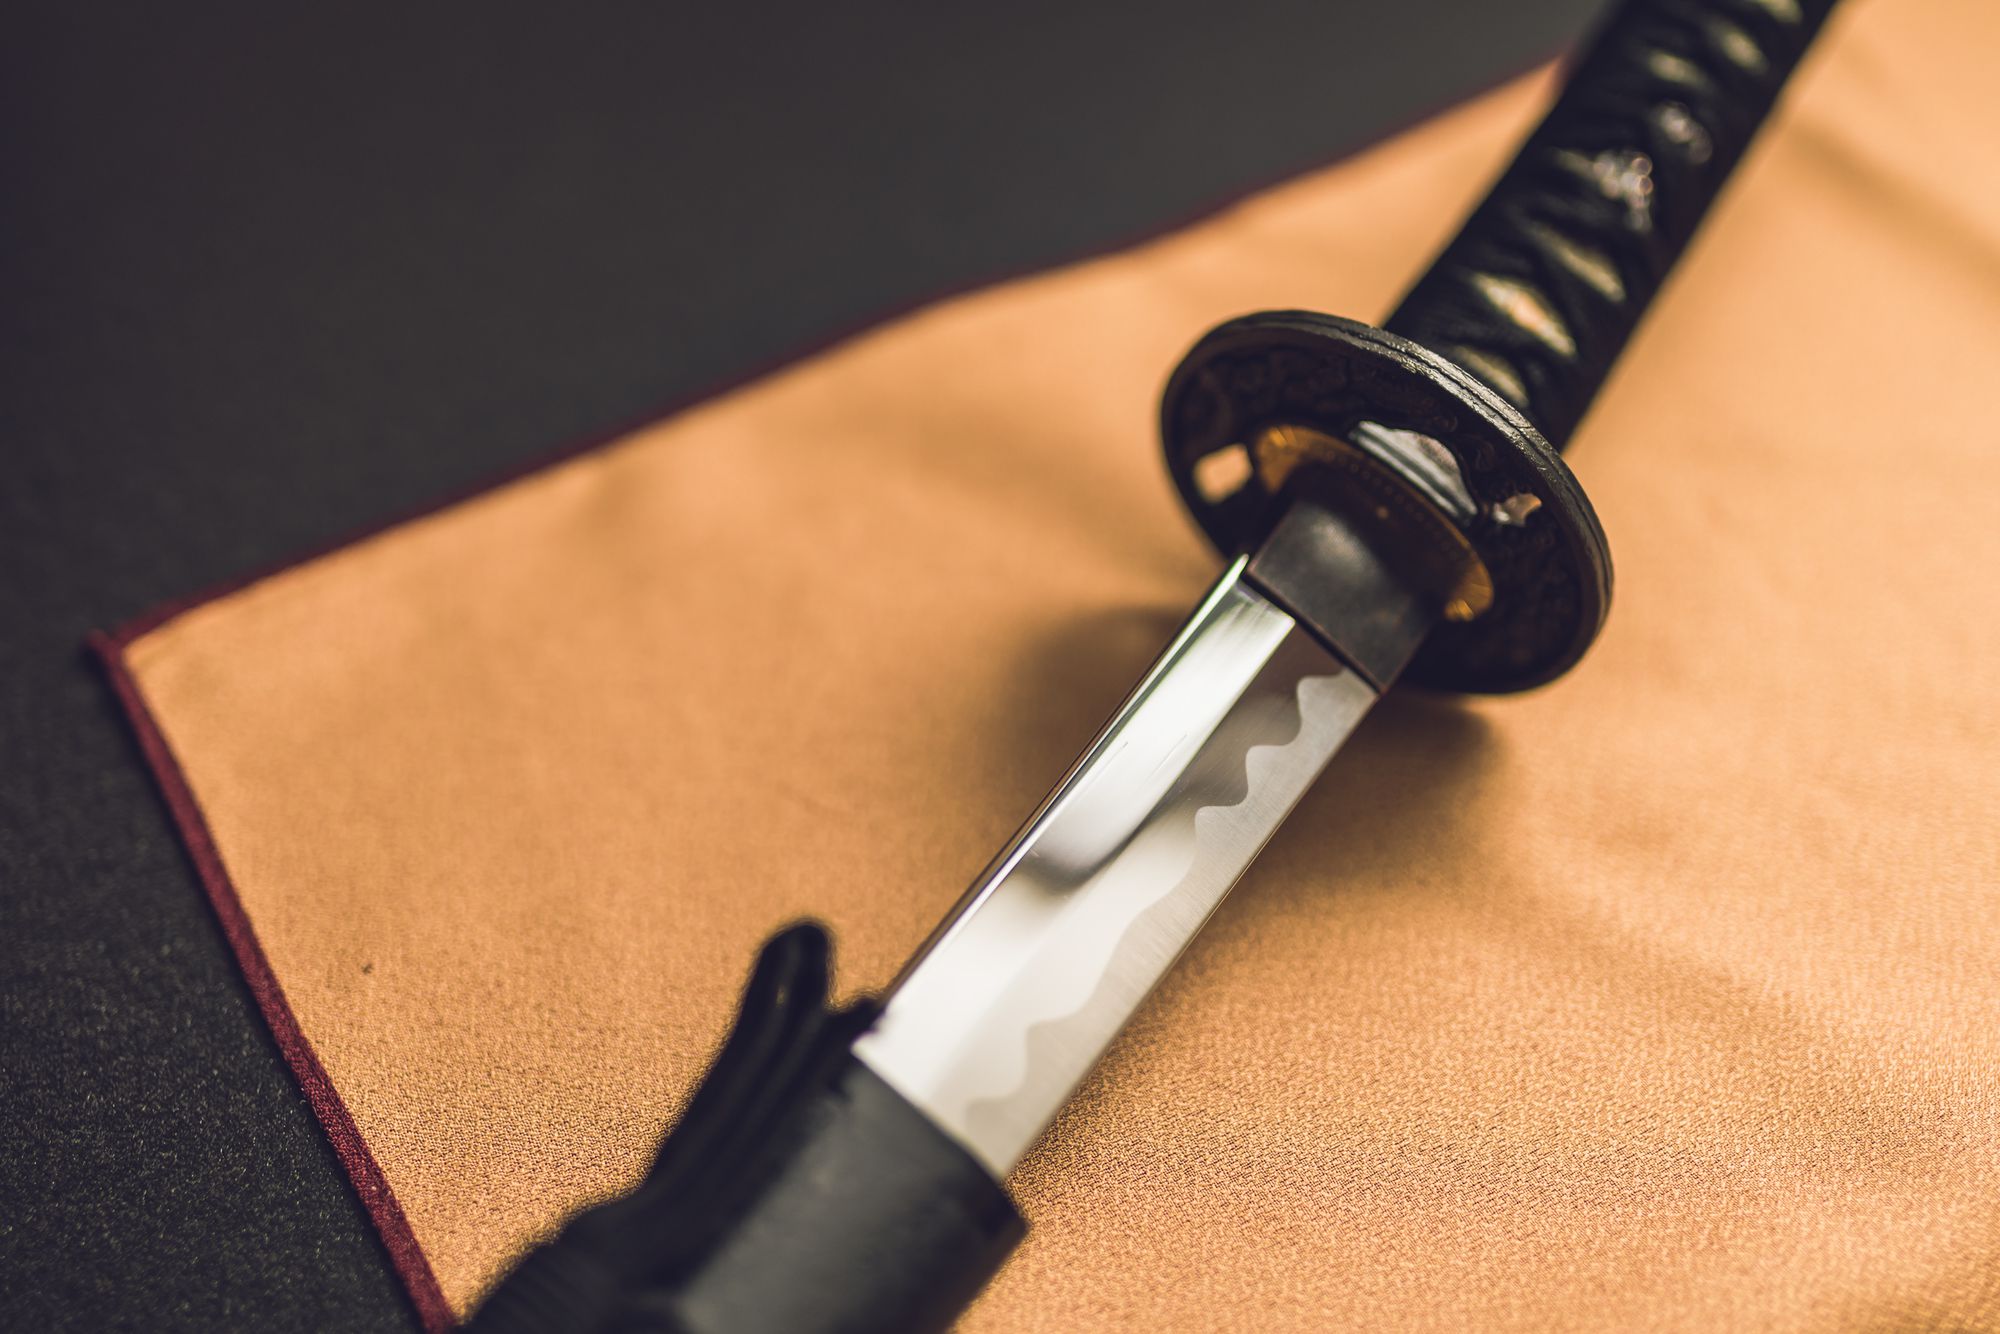 戦後の日本において日本刀はどのように扱われていたのか 日本刀買取 刀剣買取業者おすすめランキング ジャンル別4選で紹介